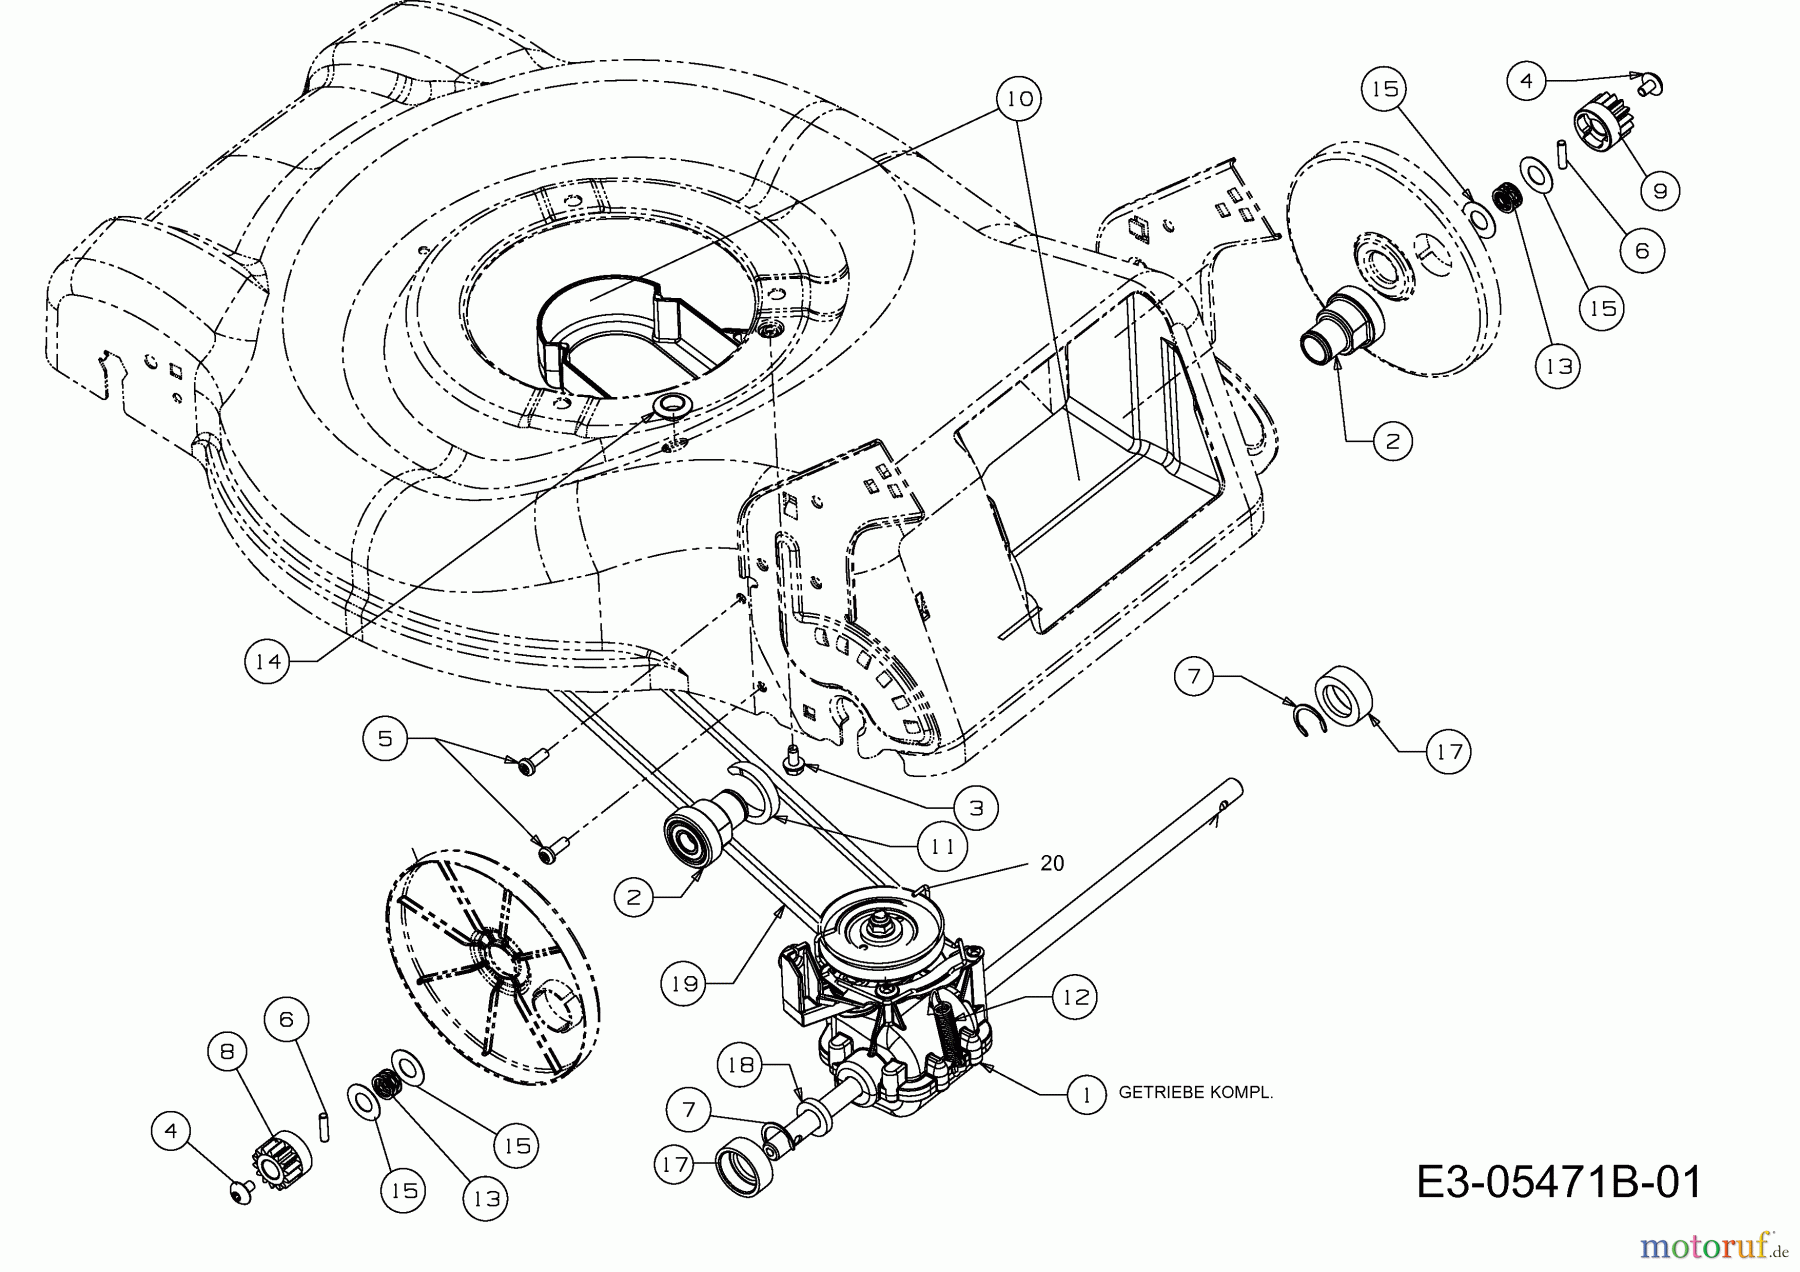  Mastercut Petrol mower self propelled MC 46 SPB 12A-J75B659  (2015) Gearbox